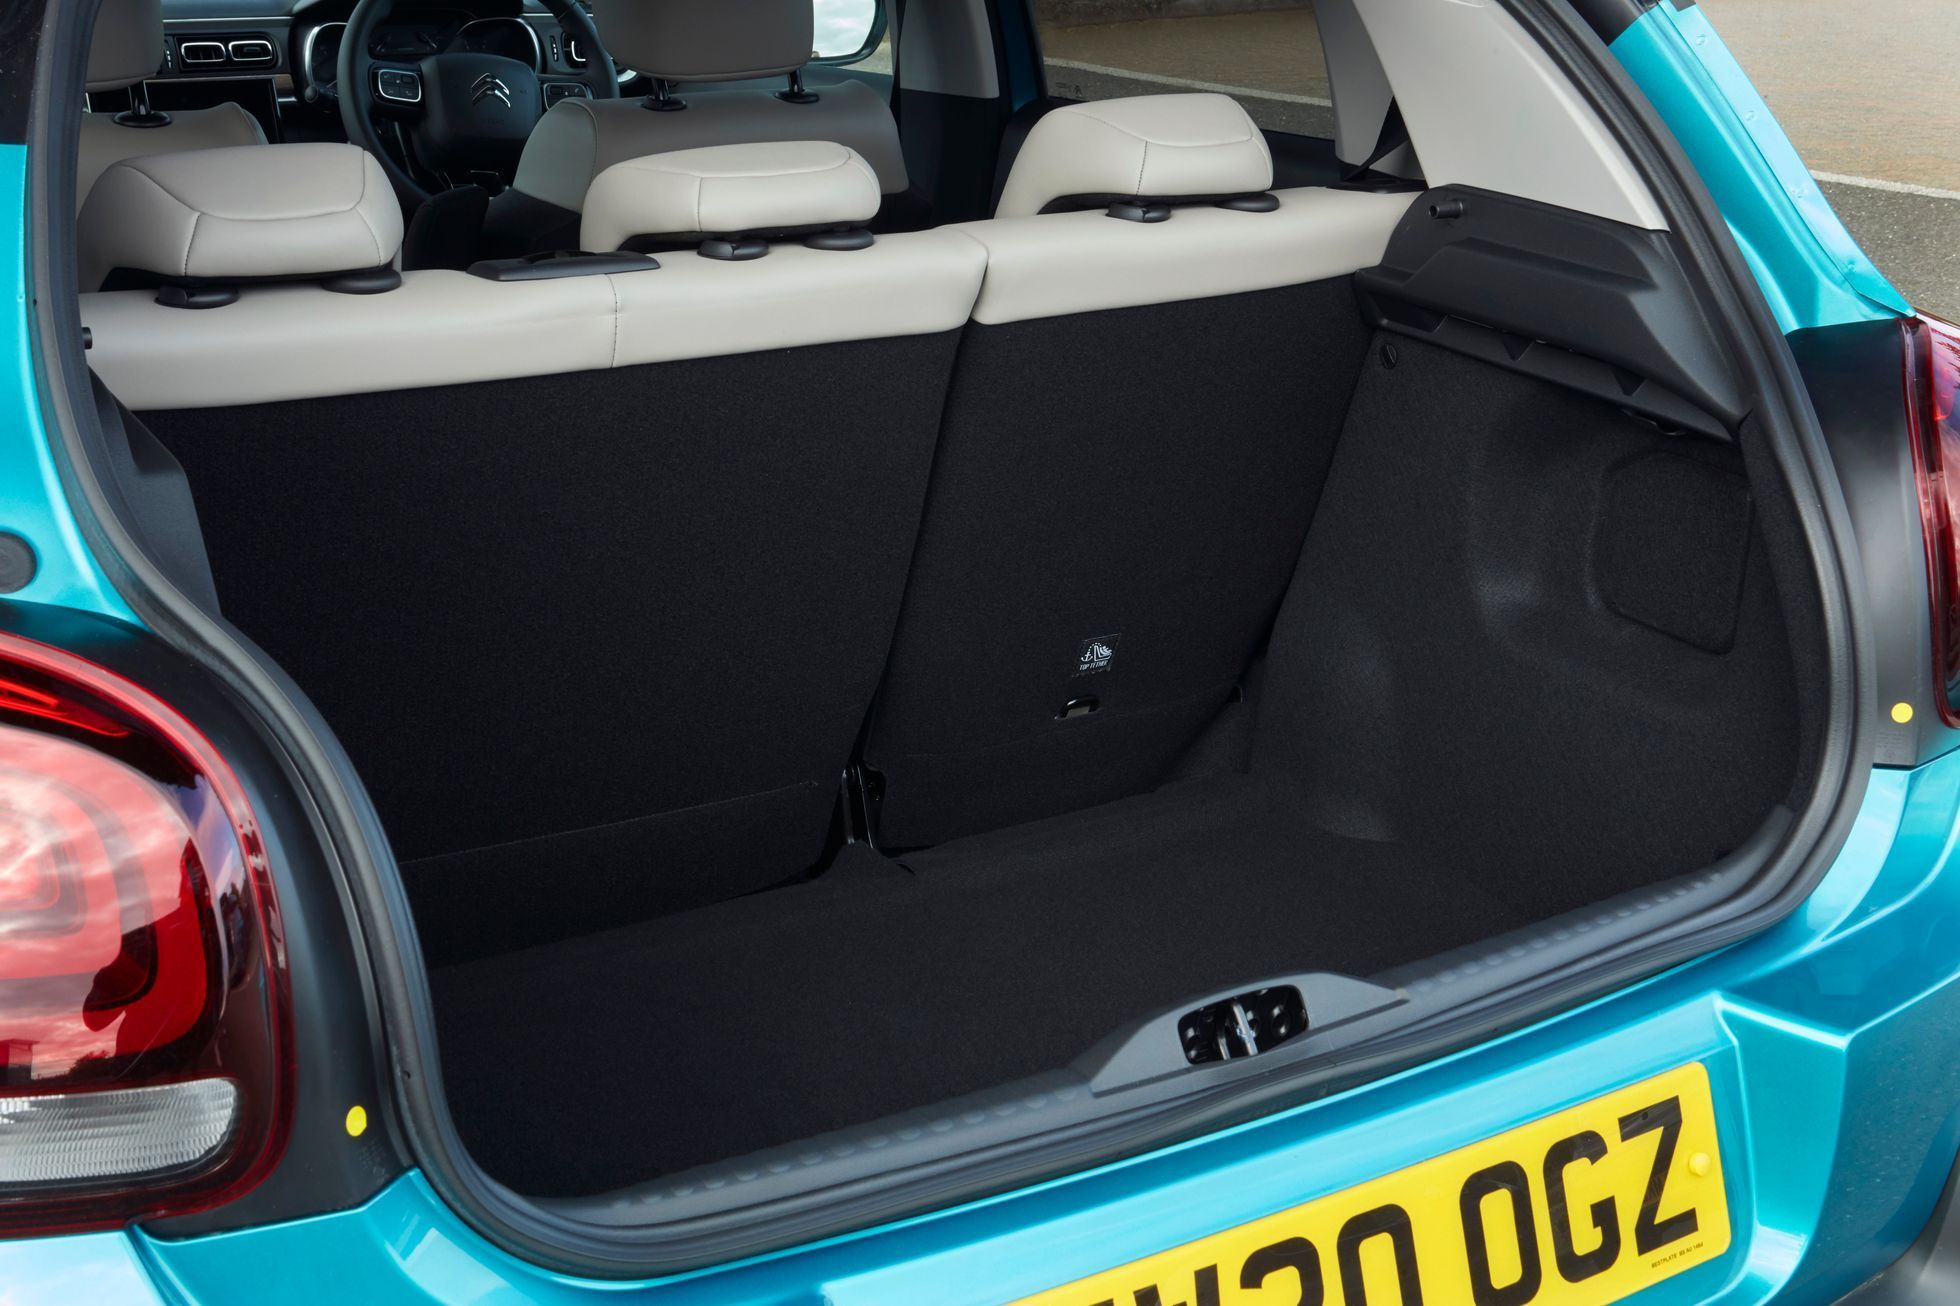 Citroën C3 zavazadlový prostor